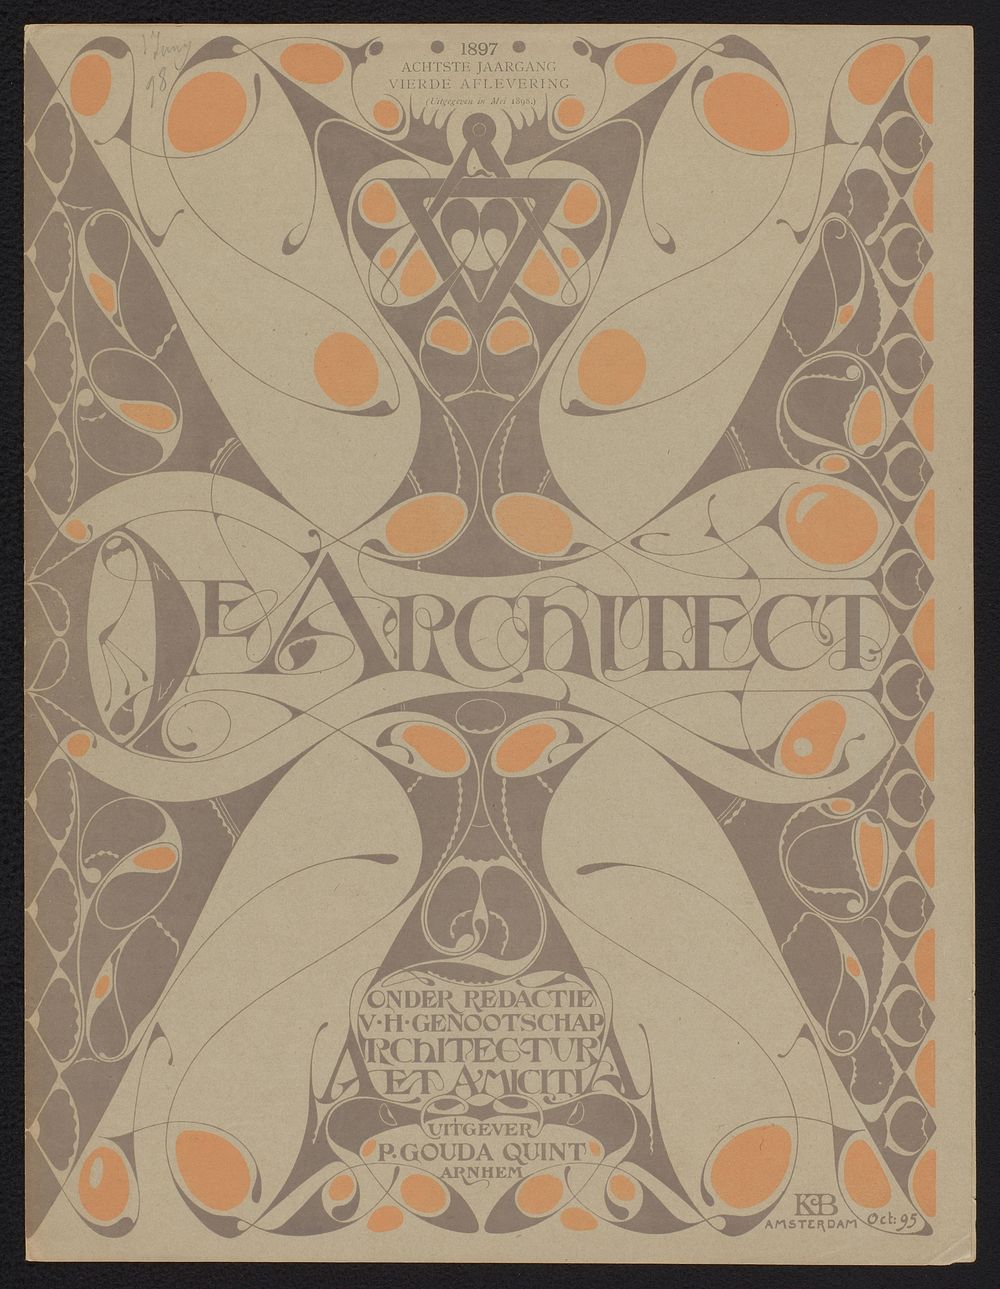 Omslag voor: De architect. Plaatwerk van Architectura et Amicitia, 1897 (1896 - 1898) by Karel Petrus Cornelis de Bazel…